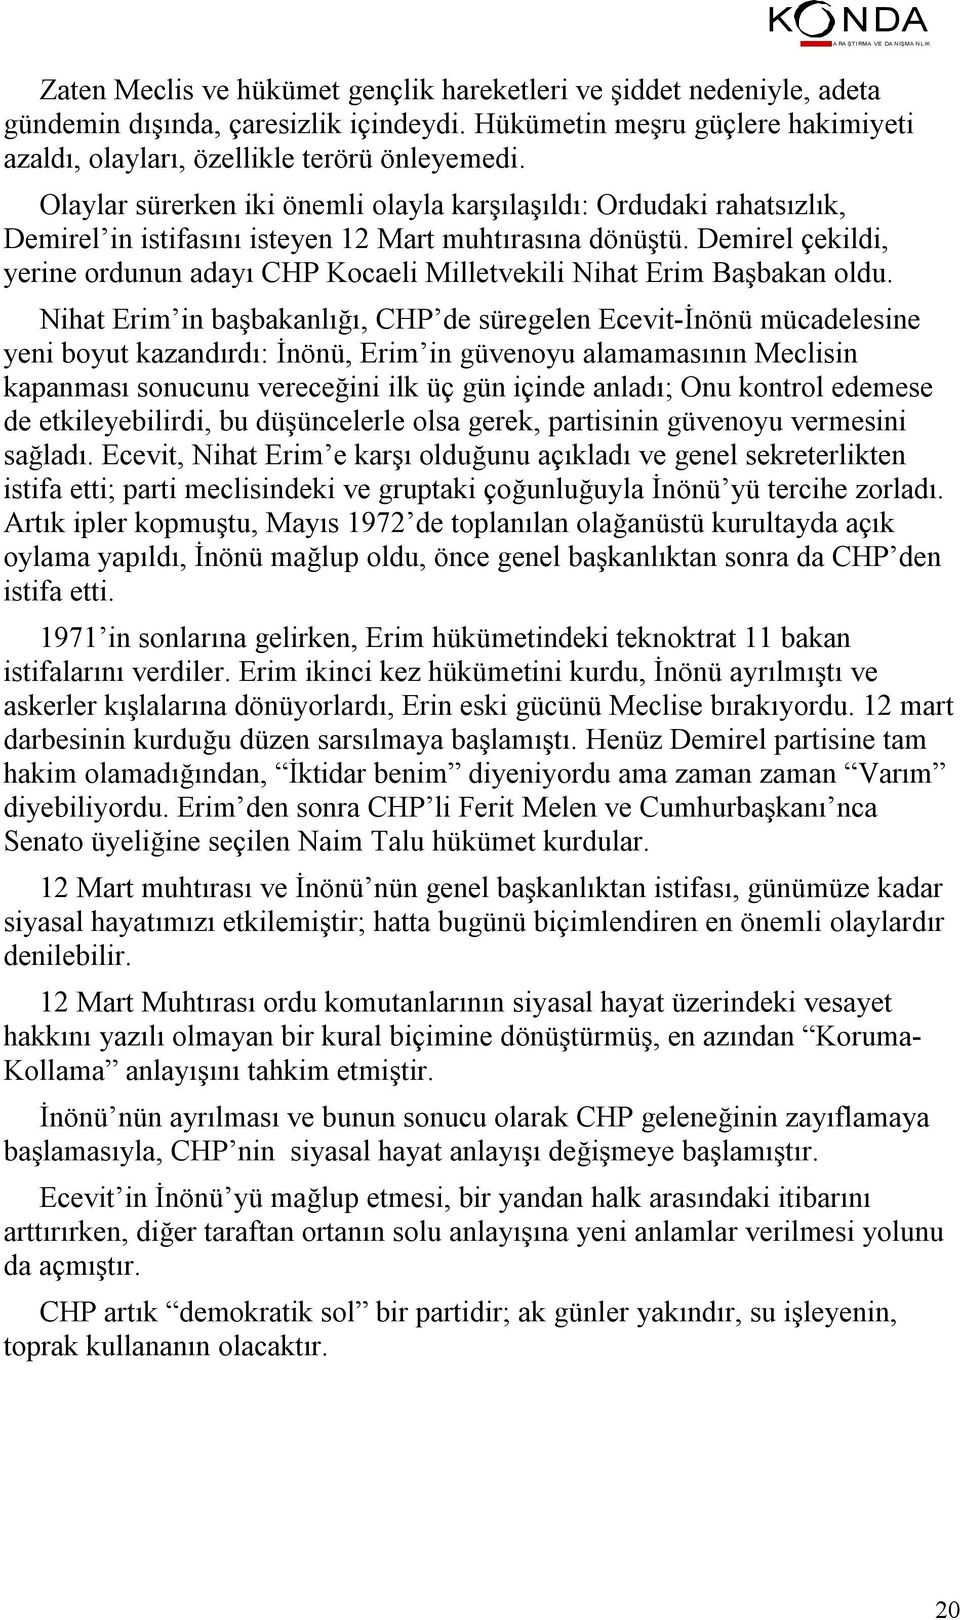 Demirel çekildi, yerine ordunun adayı CHP Kocaeli Milletvekili Nihat Erim Başbakan oldu.